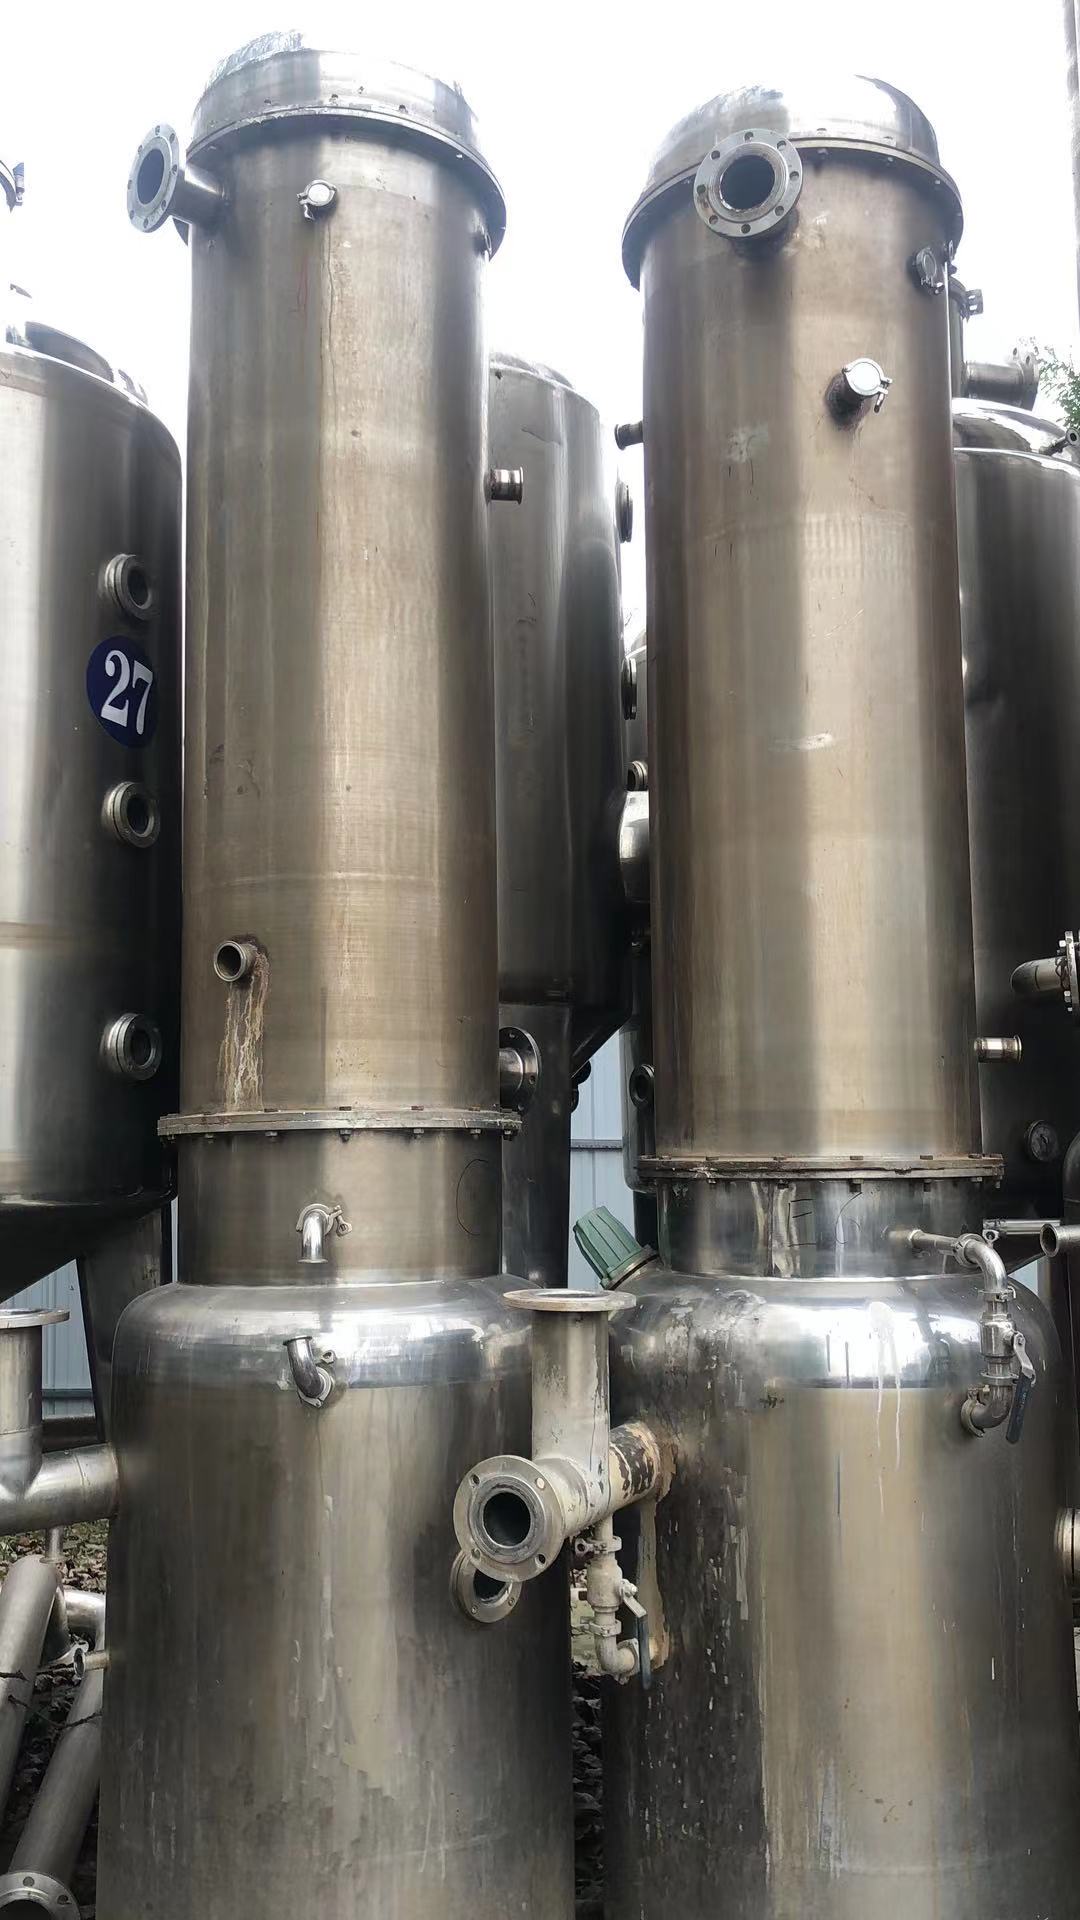 薄膜蒸发器 二手薄膜蒸发器  二手内循环蒸发器 3吨 12吨 晨光化工机械  厂家直销